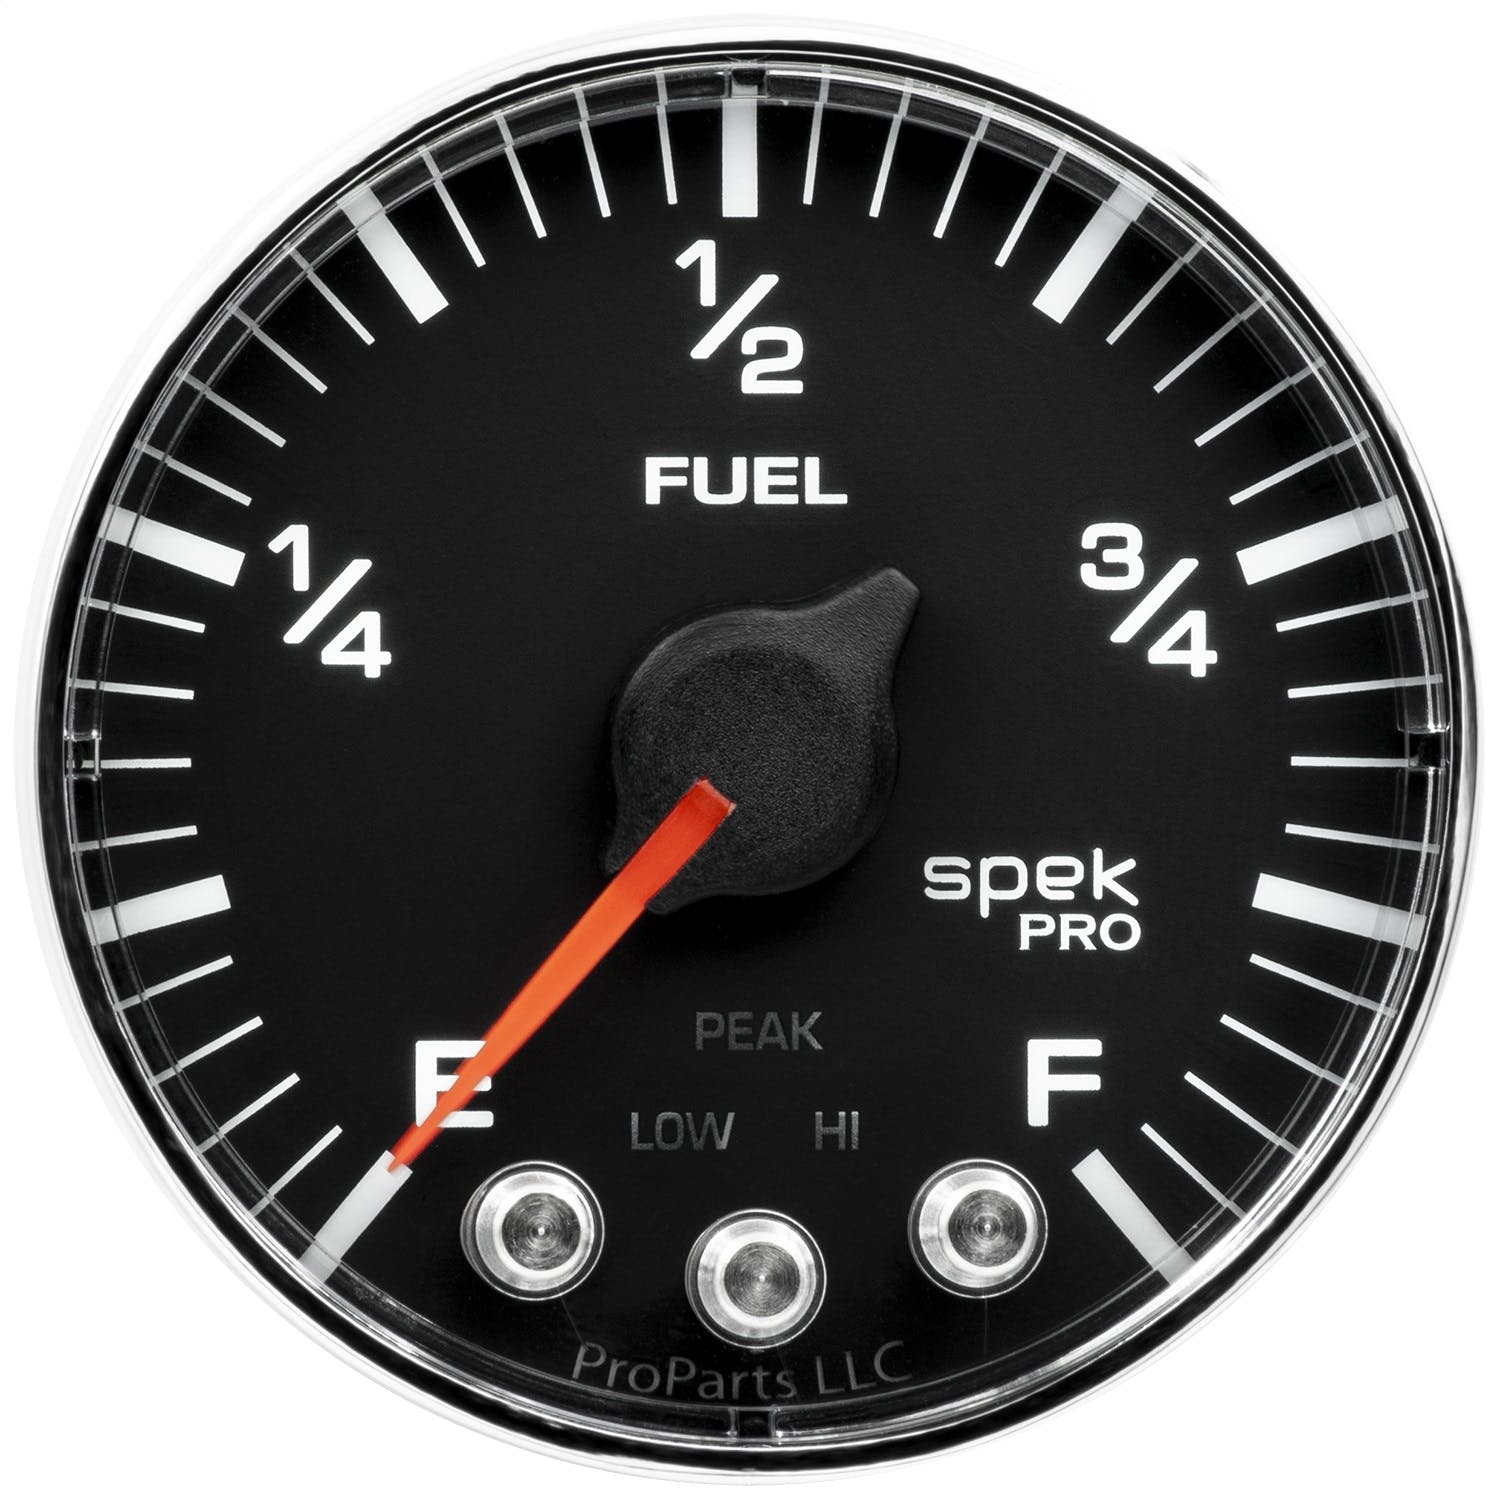 AutoMeter Products P312318 Spek Pro Fuel Level Gauge, 2 1/16, Programmable Black/Chrome